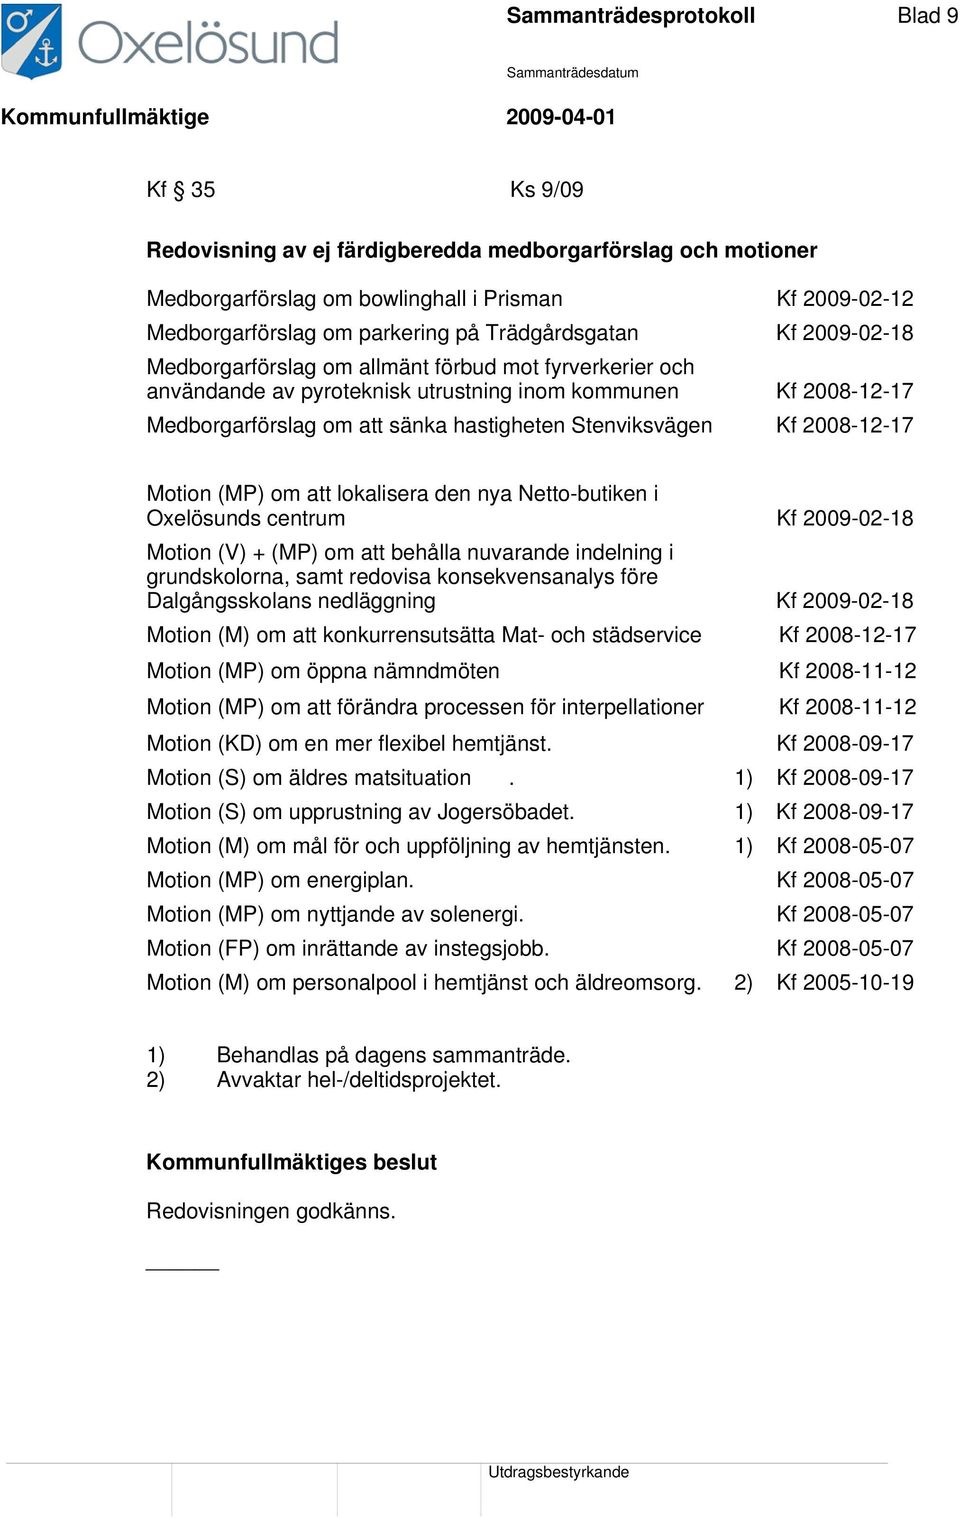 Stenviksvägen Kf 2008-12-17 Motion (MP) om att lokalisera den nya Netto-butiken i Oxelösunds centrum Kf 2009-02-18 Motion (V) + (MP) om att behålla nuvarande indelning i grundskolorna, samt redovisa